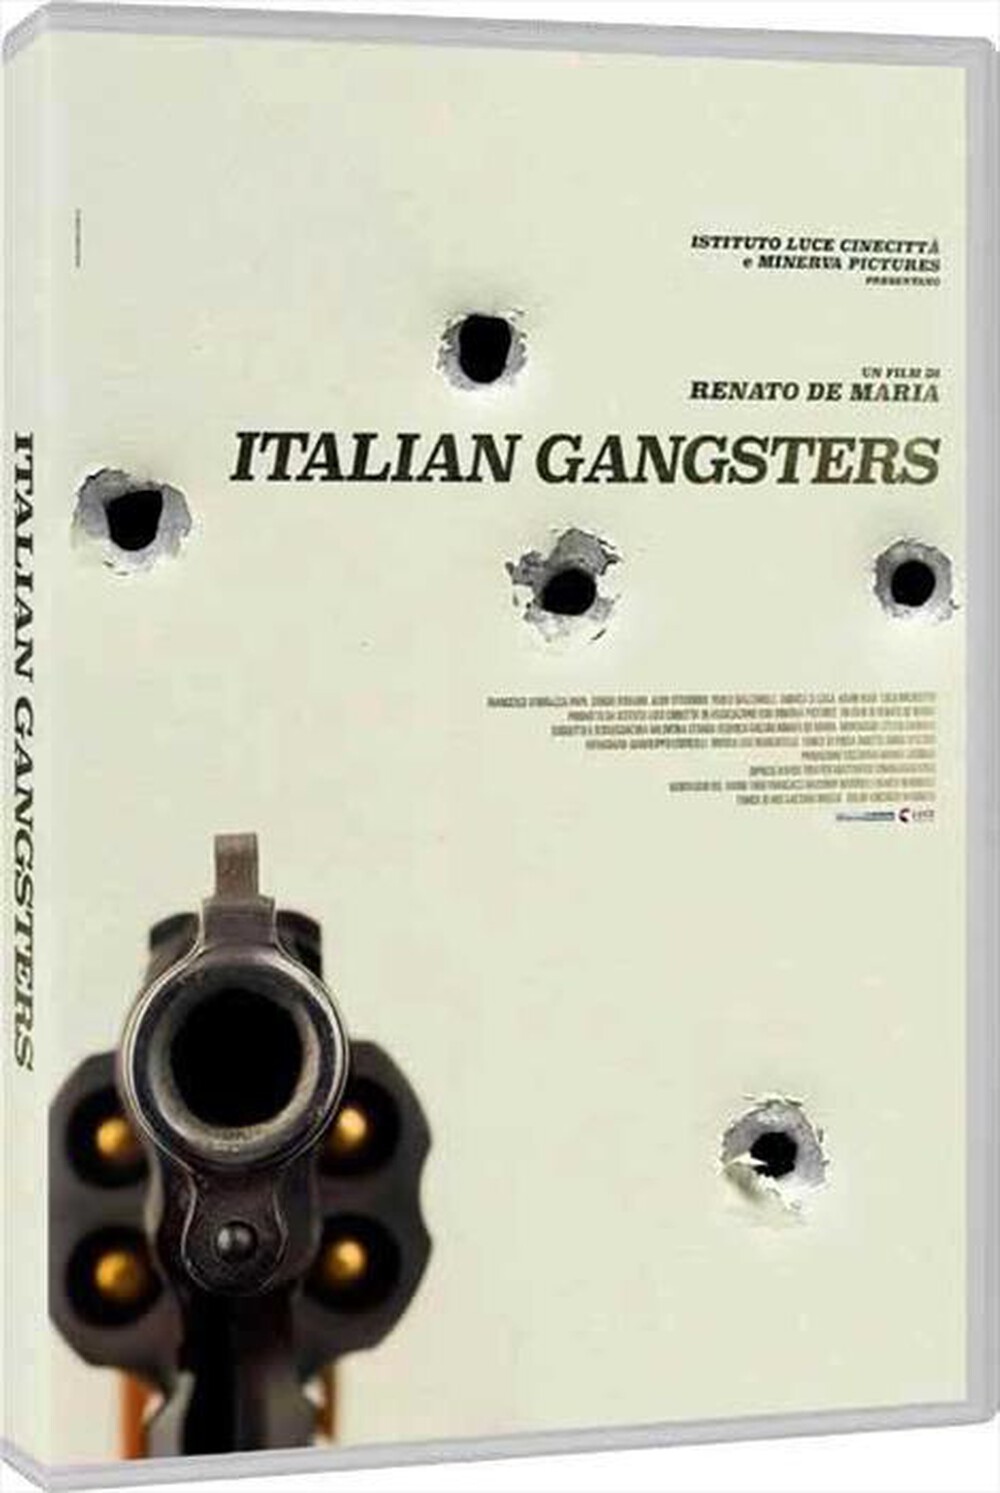 "CECCHI GORI - Italian Gangsters"